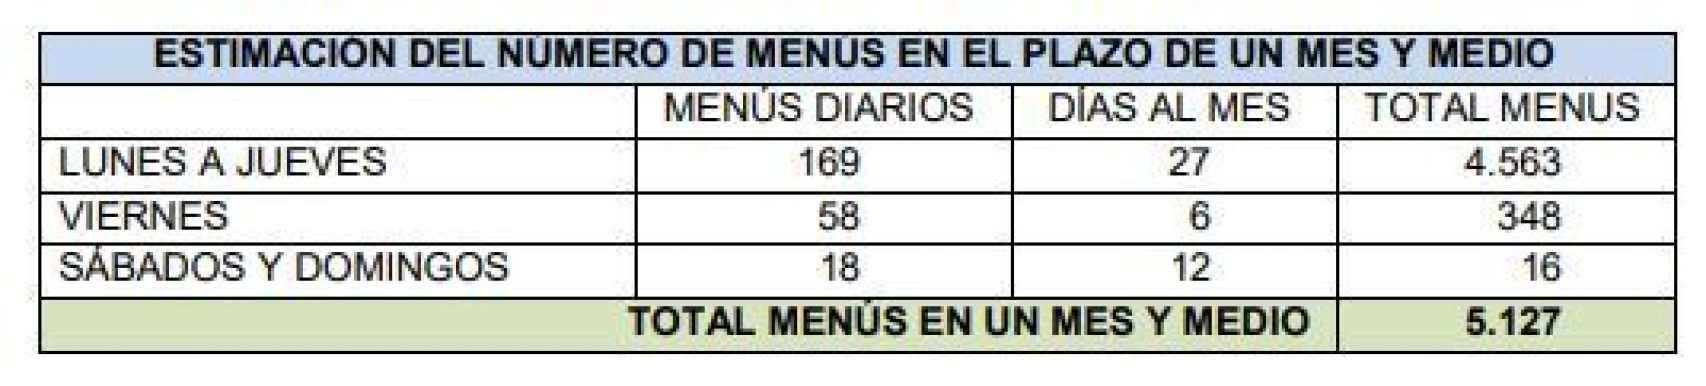 Tabla de precios para el menú en La Moncloa.